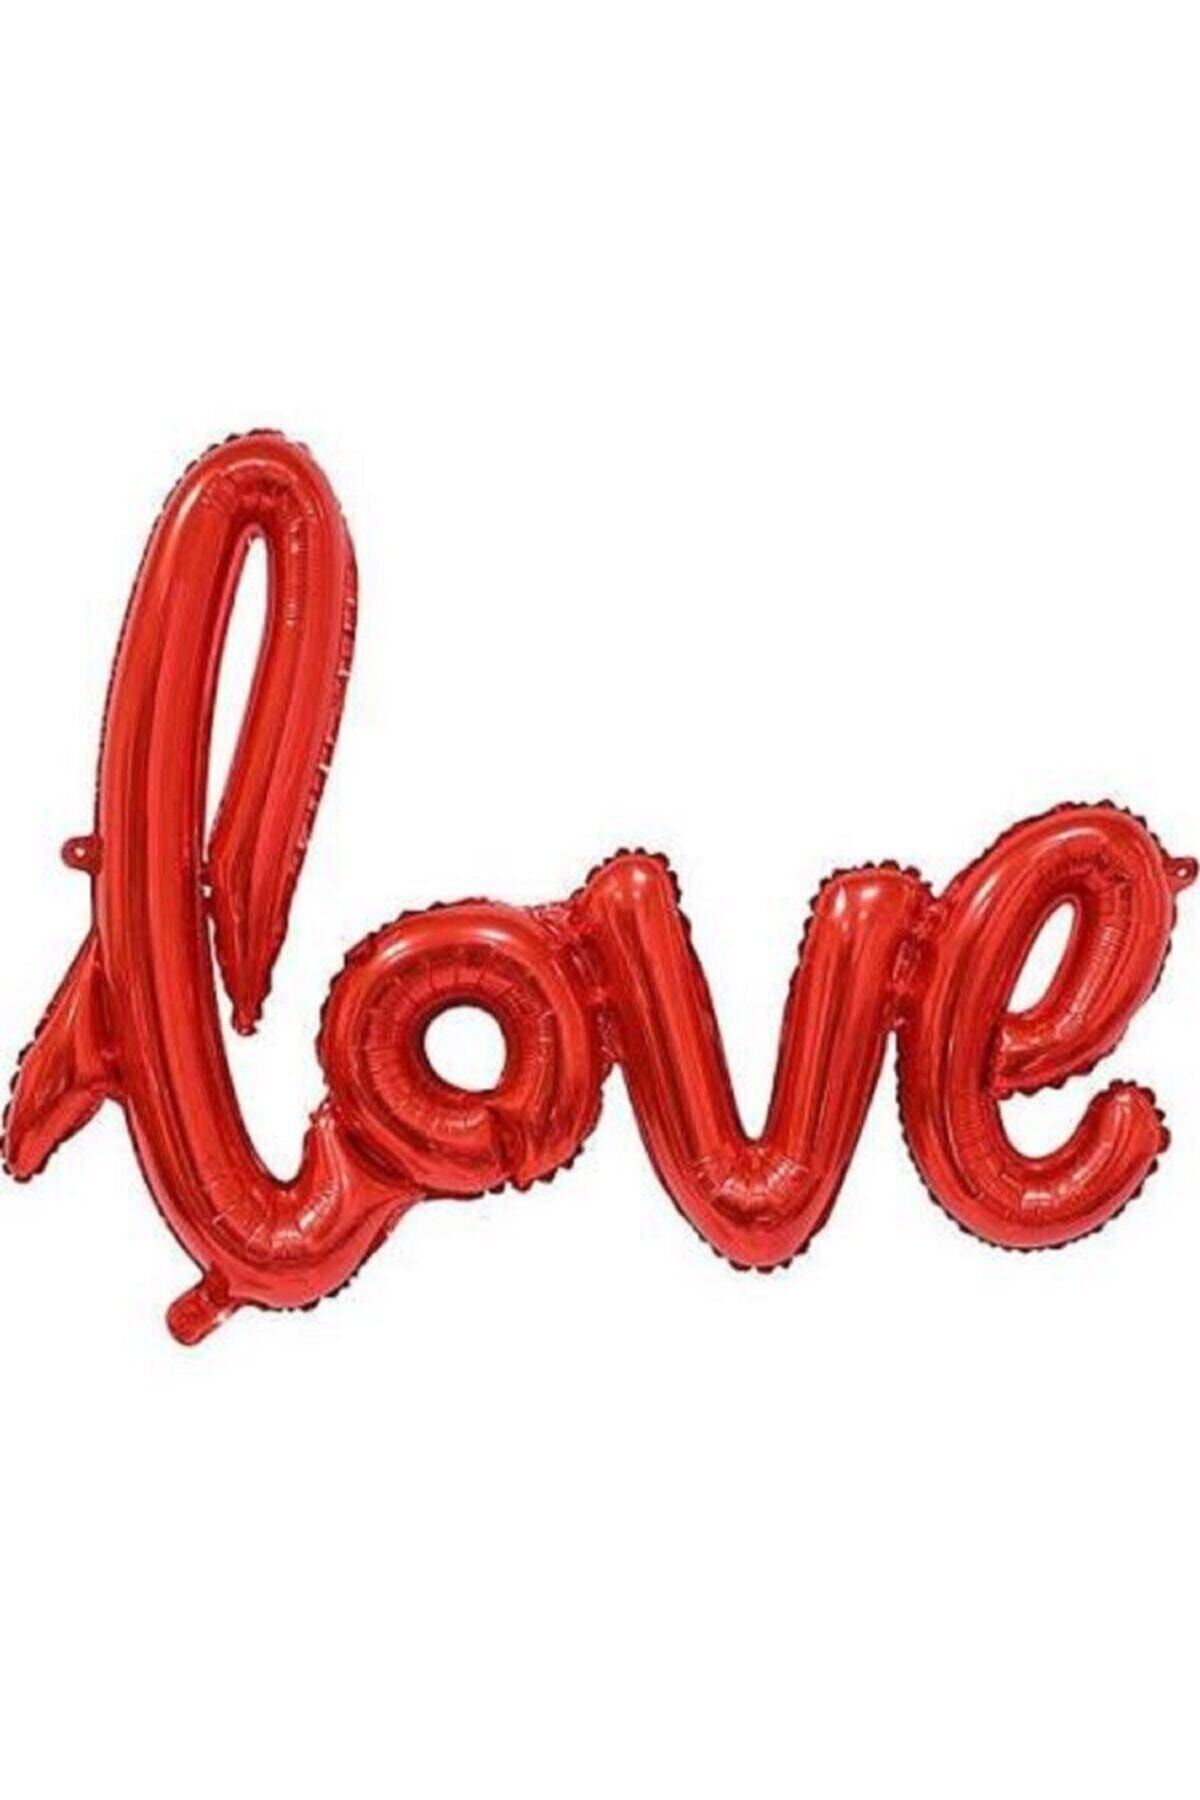 Deniz Party Store Kırmızı Love El Yazısı Folyo Balon